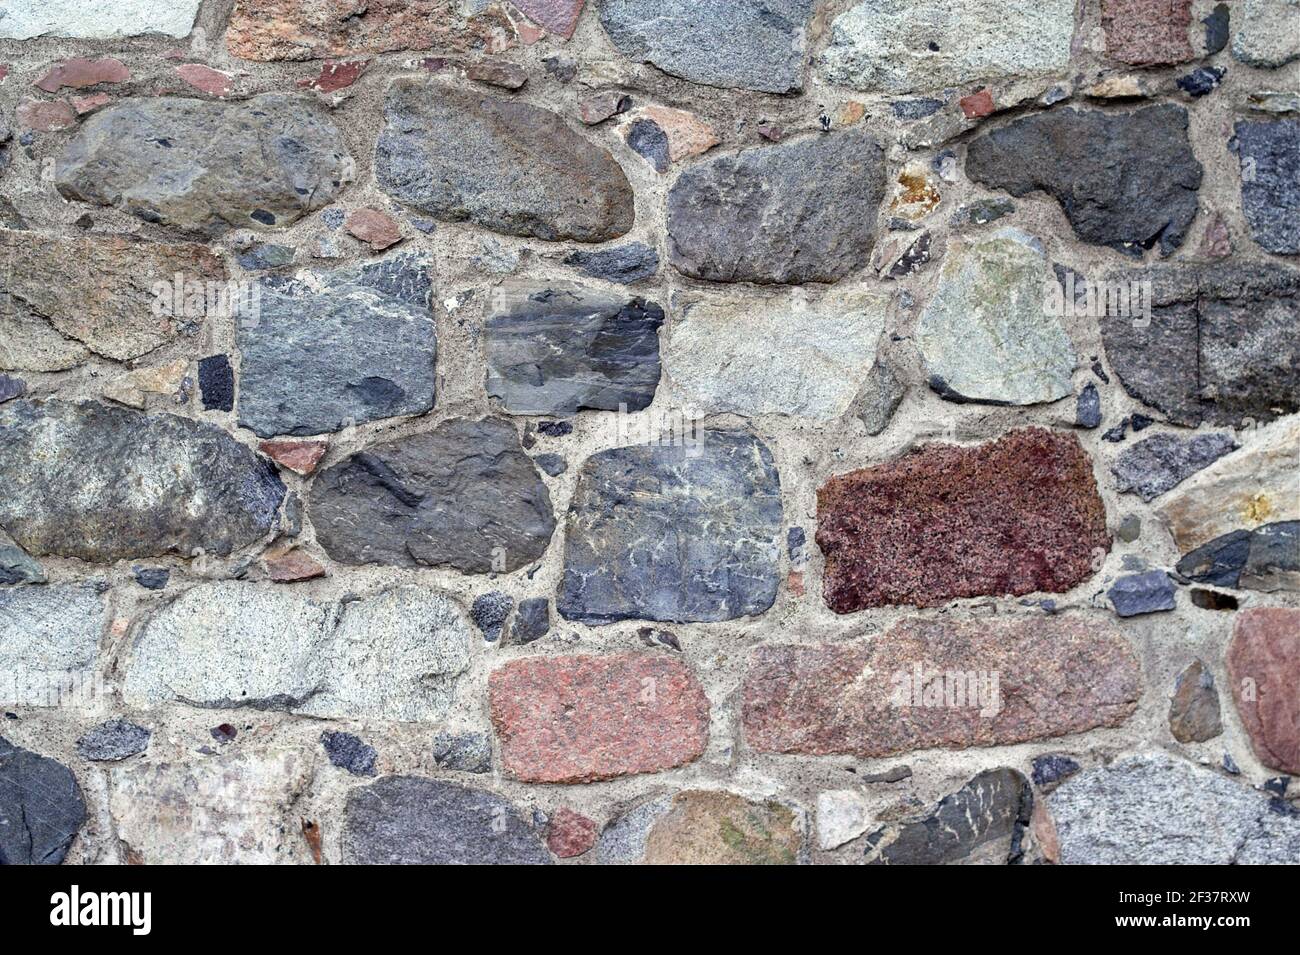 Gammelstad, Schweden, Schweden; EINE Wand aus großen, mehrfarbigen Steinen. Eine Wand aus großen, bunten Steinen. UN muro de grandes piedras de colores. Stockfoto